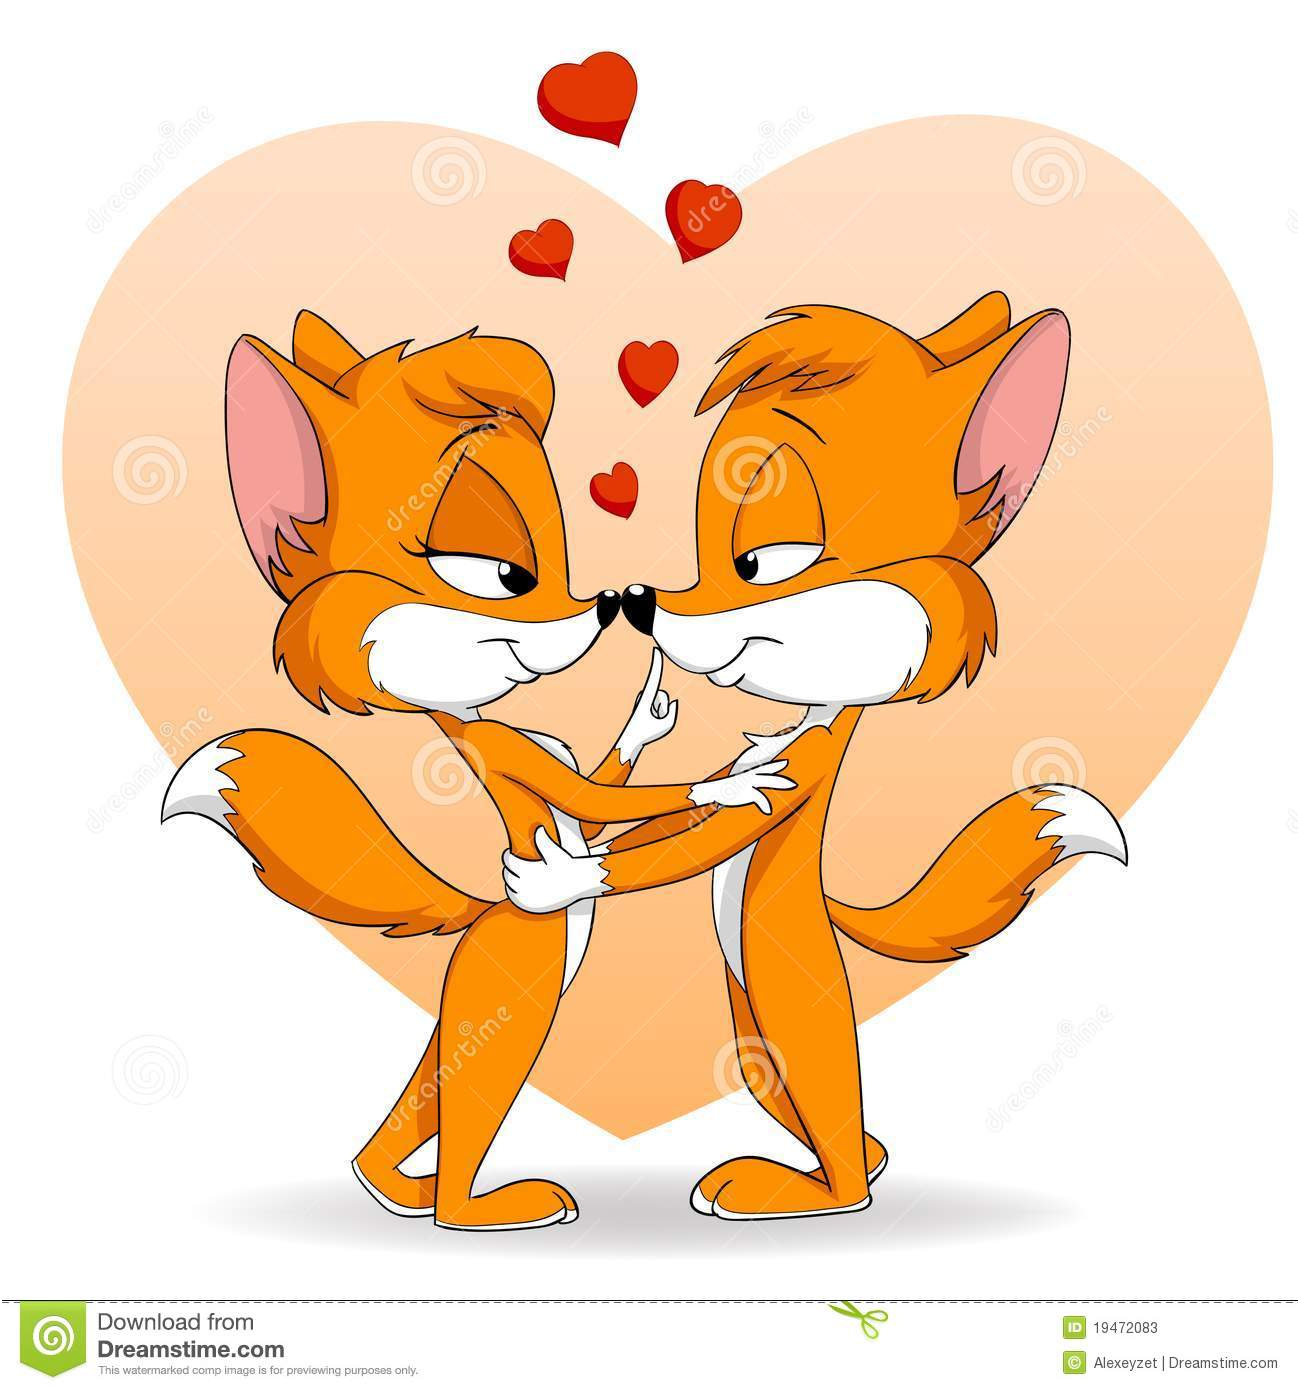 photos stock chute mignonne de deux dessins anims dans le renard d amour image